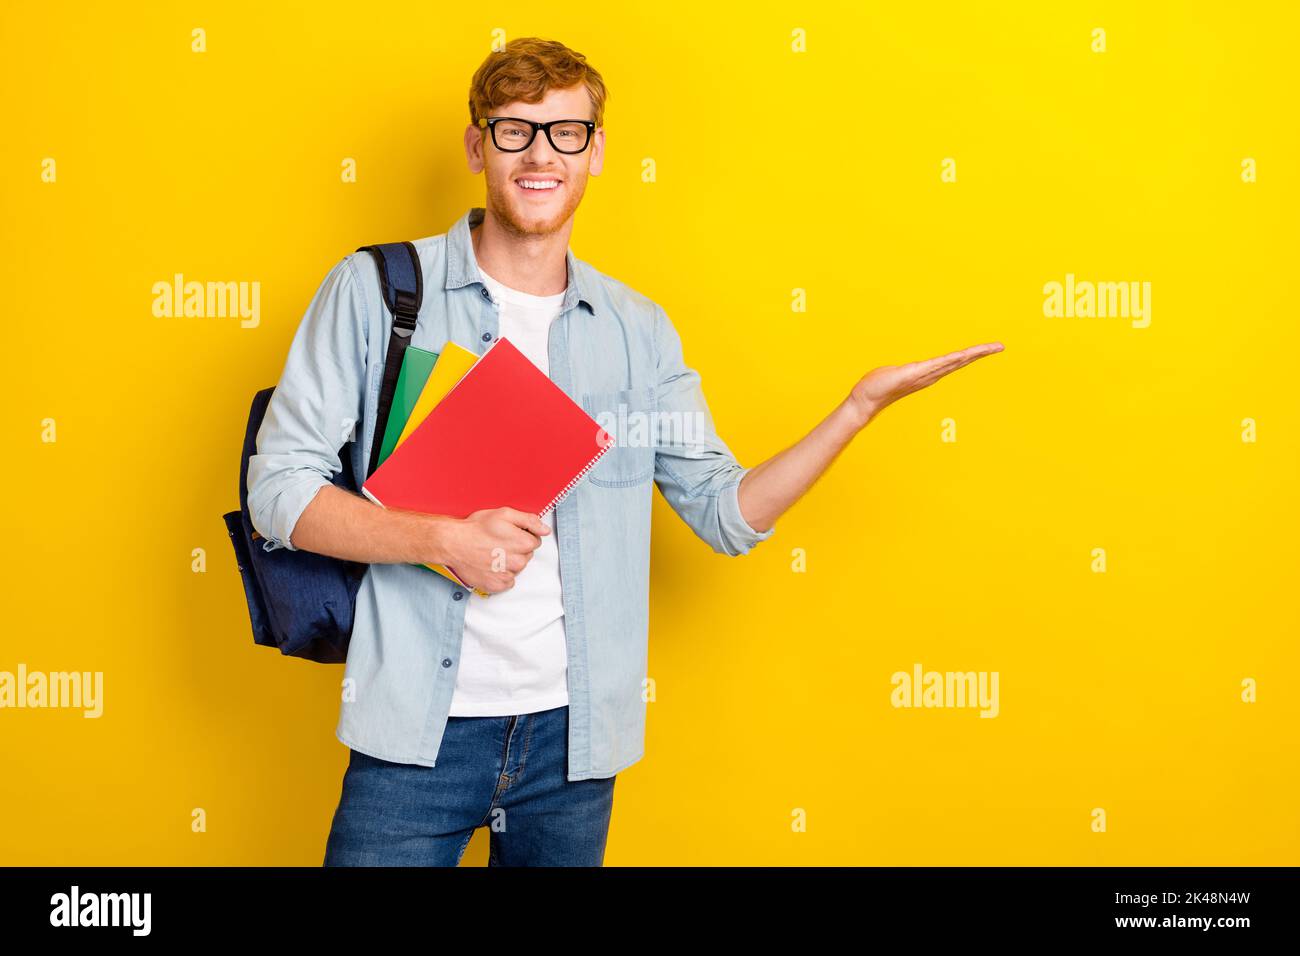 Portrait Foto von jungen attraktiven Studenten Universität halten Bücher empfehlen App für das Studium isoliert auf gelbem Hintergrund Stockfoto